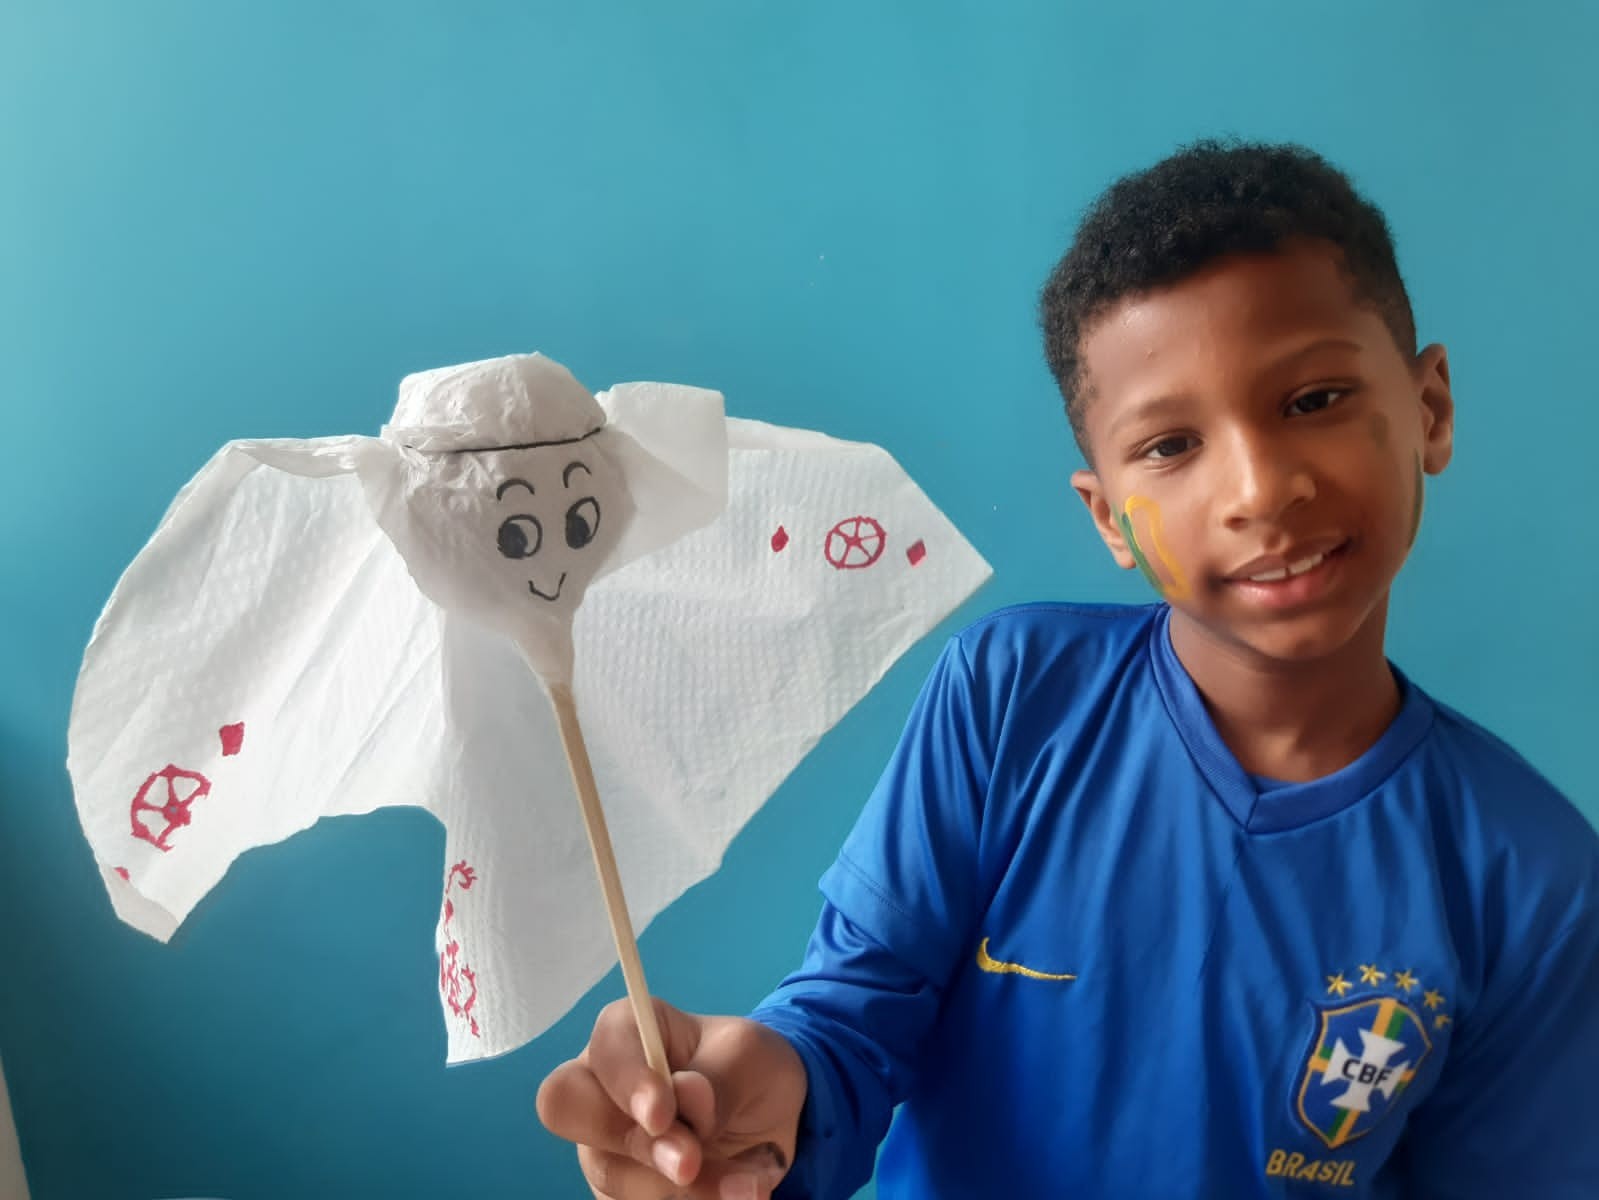 VÍDEO: professora em MG ensina a fazer o La'eeb, mascote da Copa do Mundo no Catar